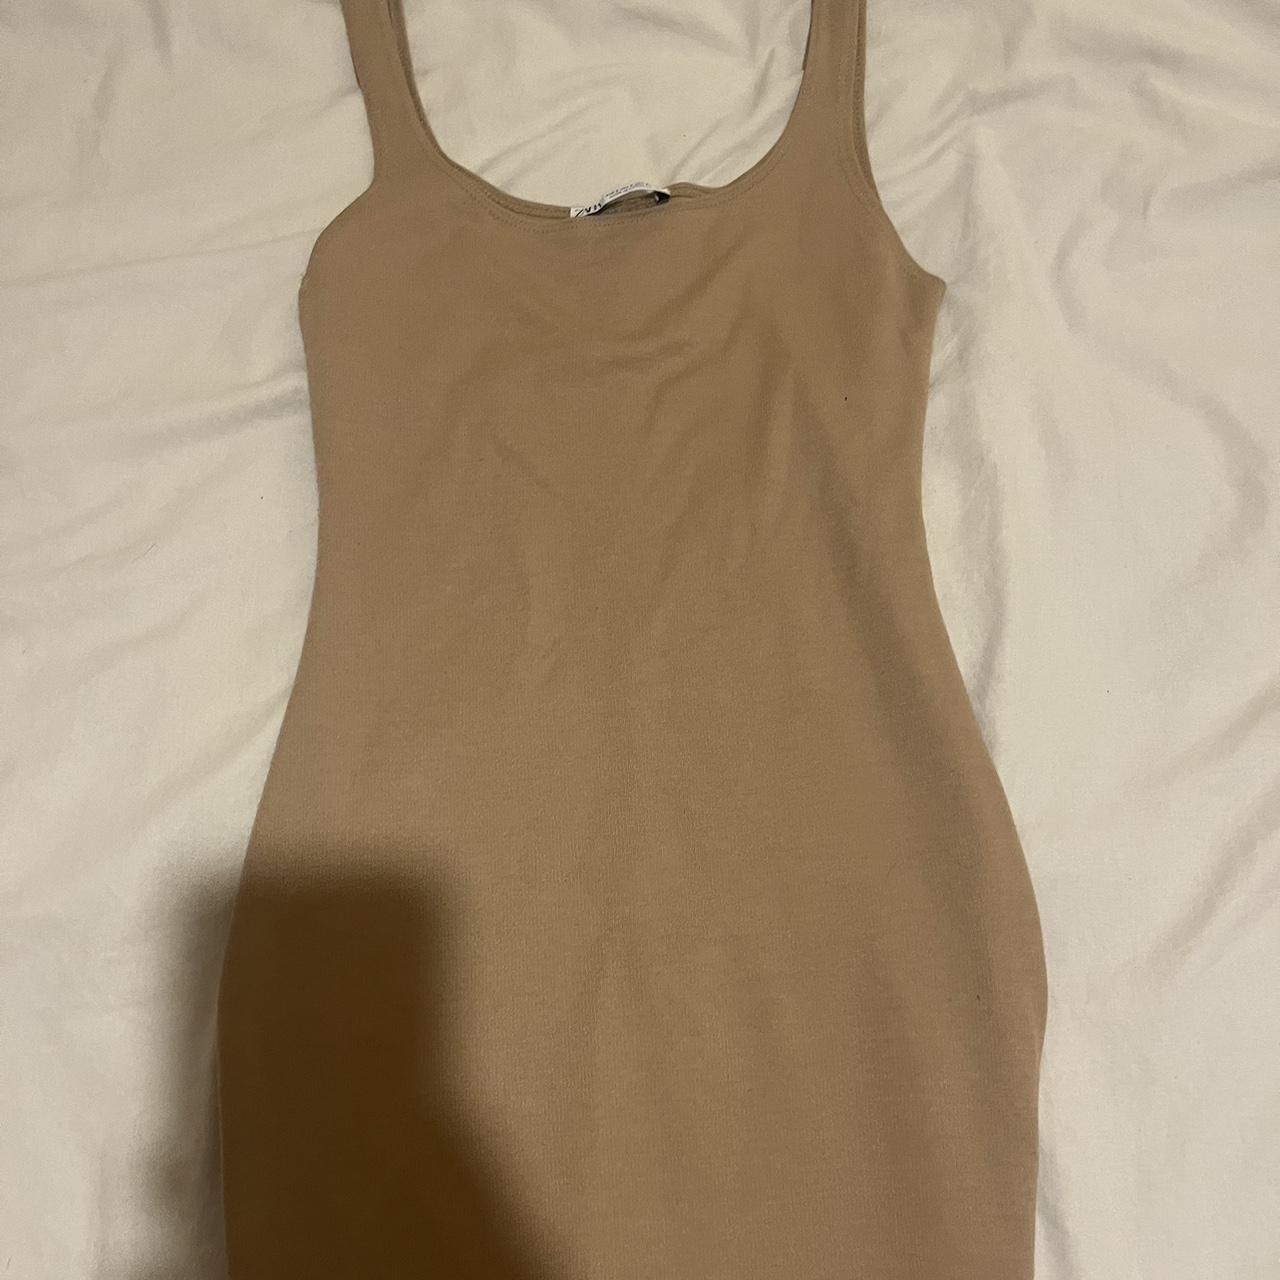 Zara long scoop necked dress size S (6-8) - Depop